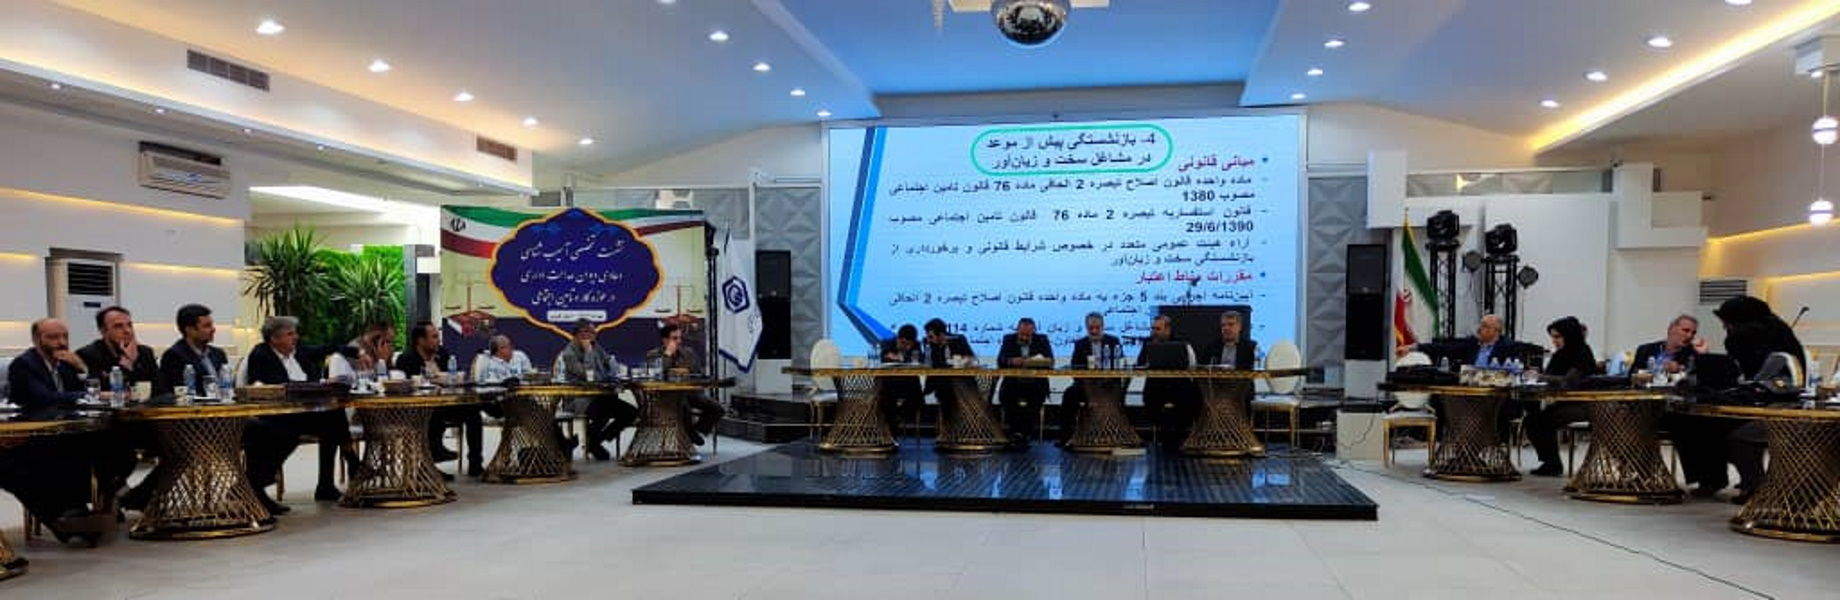 نشست تخصصی آموزشی دعاوی دیوان عدالت اداری در حوزه کار و تامین اجتماعی در استان قزوین